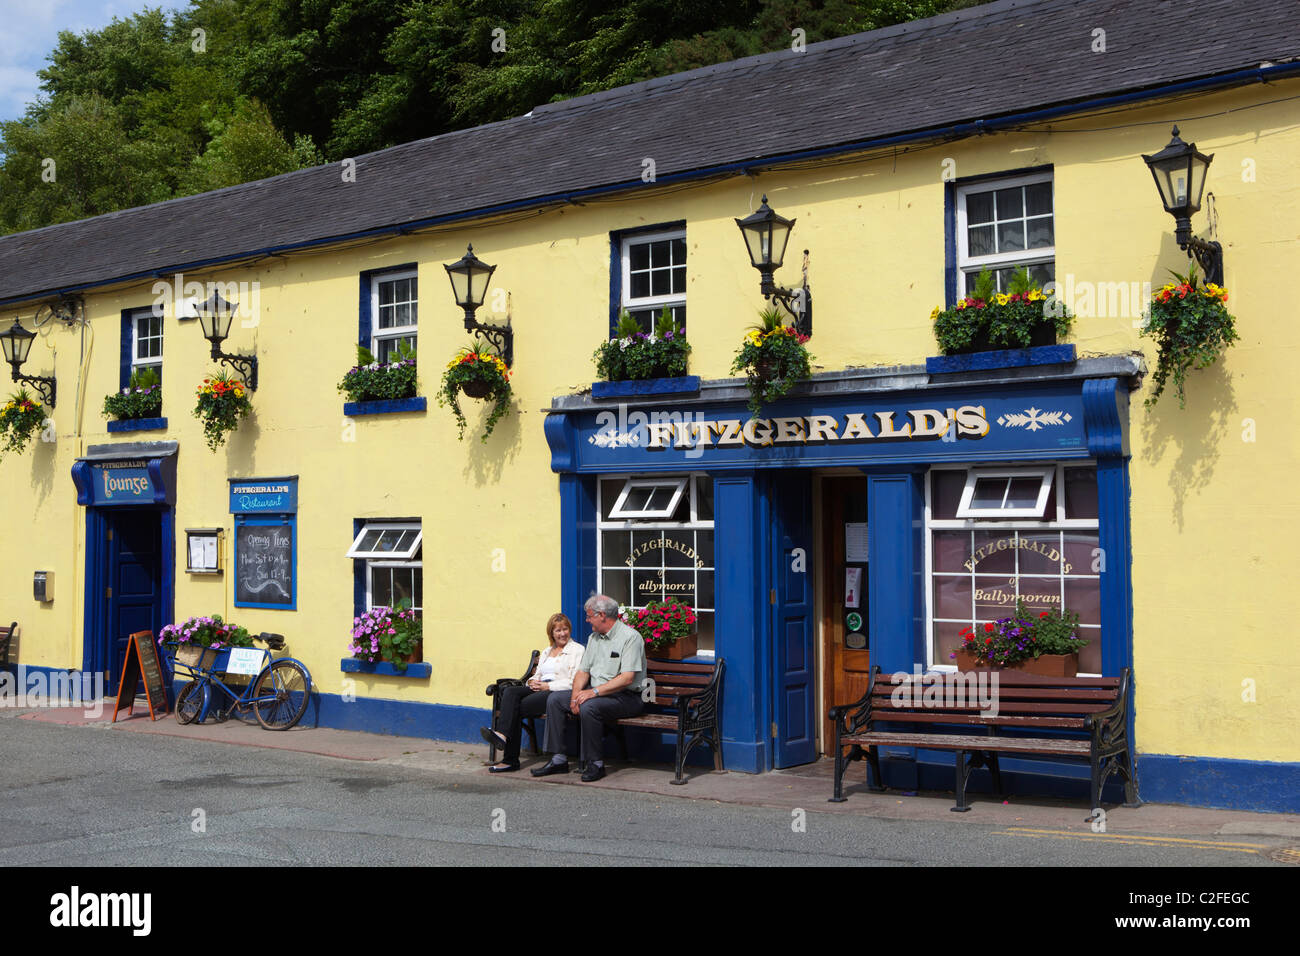 Fitzgerald's Irish pub, set in village featured in BBC TV series, Ballykissangel Stock Photo